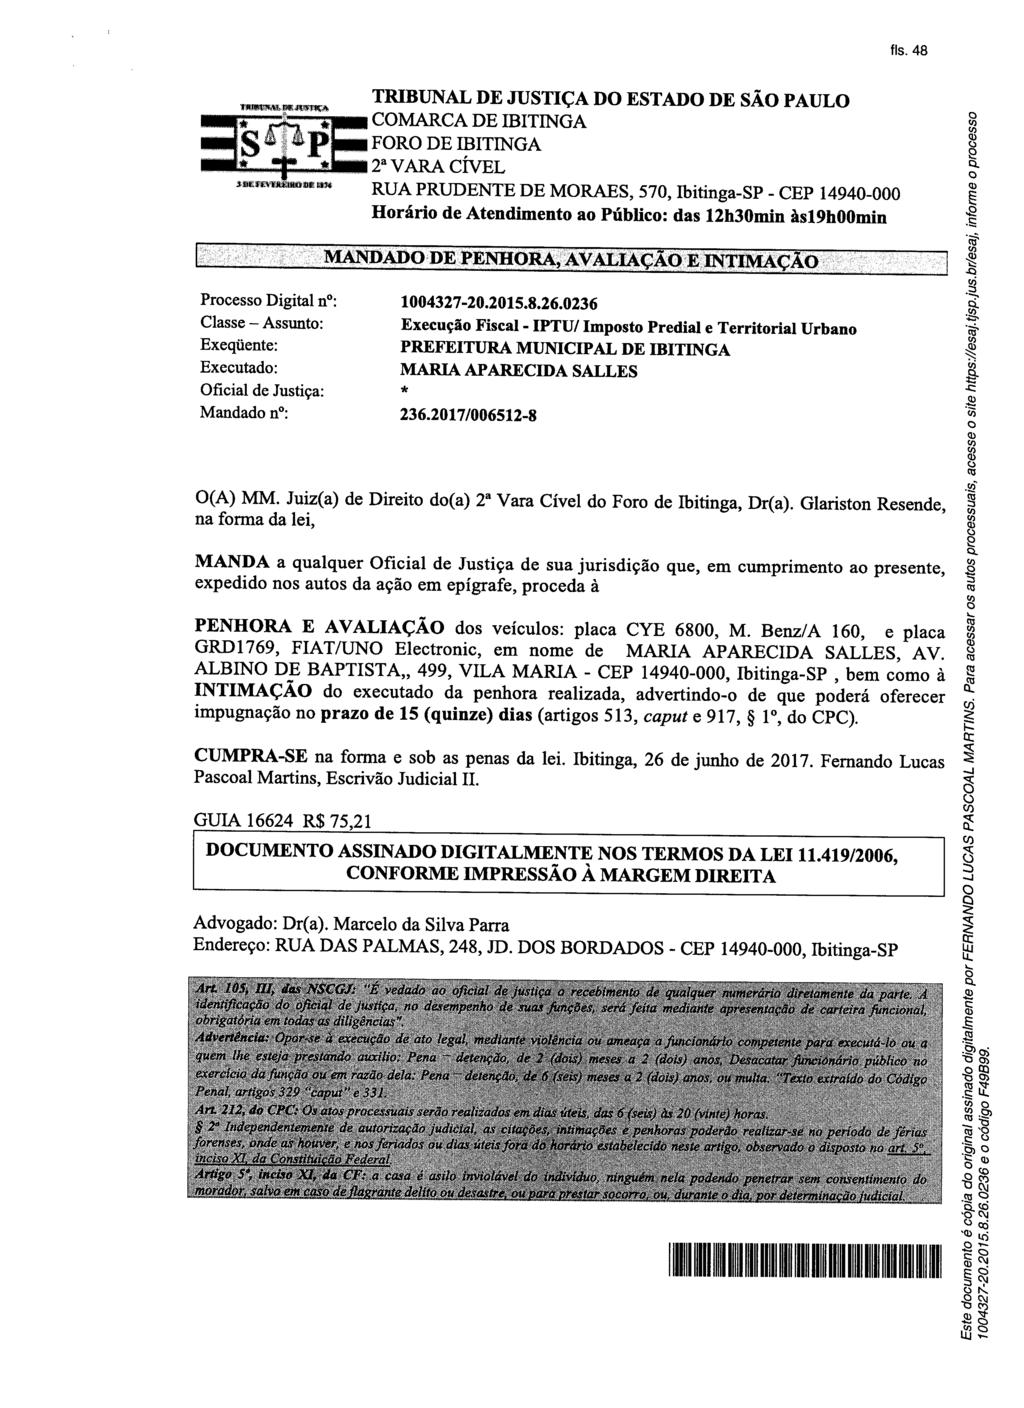 fls. 51 Este documento é cópia do original, assinado digitalmente por BRUNO PAULO ARANEDA VILLEGAS, liberado nos autos em 26/07/2017 às 09:20.